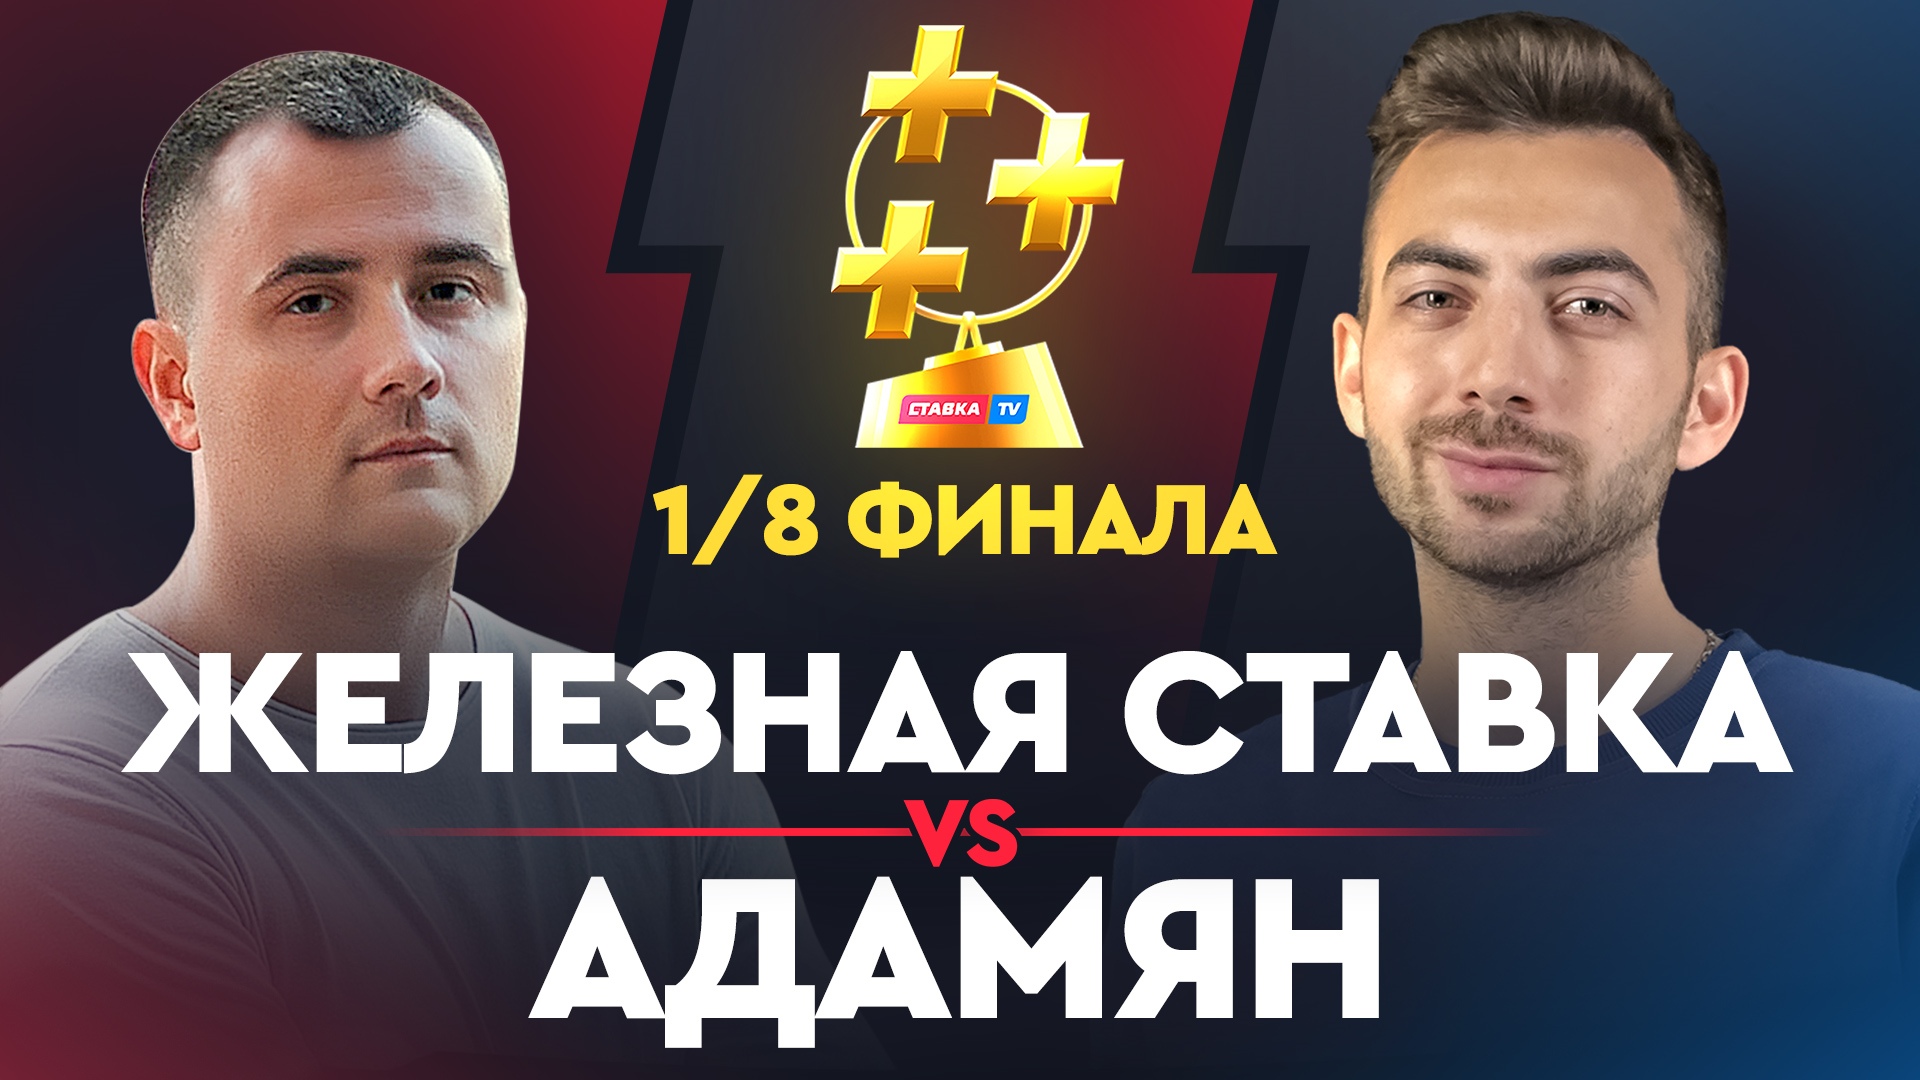 Железная Ставка vs Адамян. Битва теневых фаворитов в Кубке прогнозистов Рунета